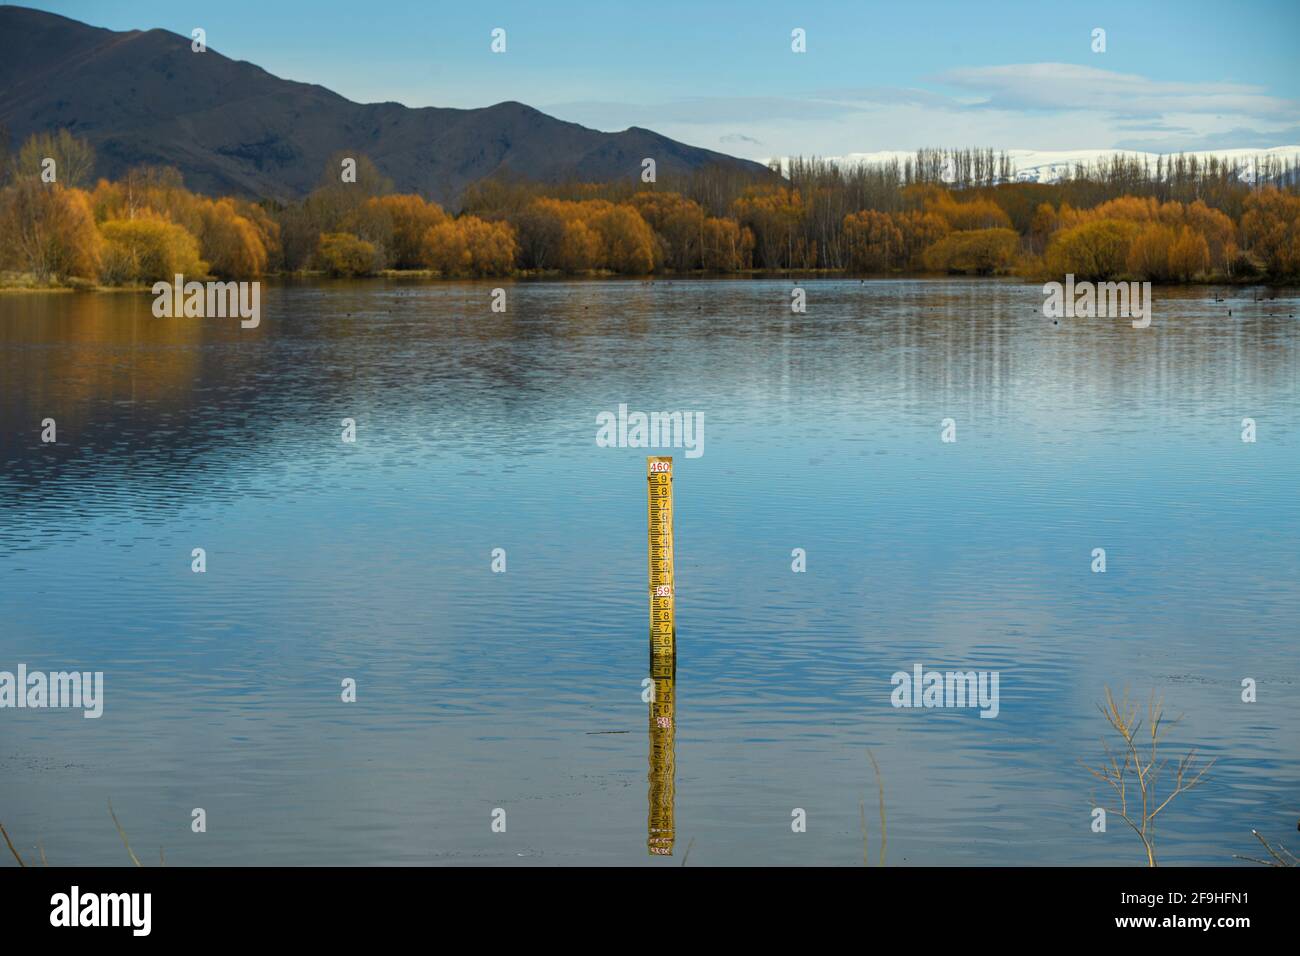 Wasserstand Messmast Hintergrund sind Berge und Bäume im Fall eines Sees auf der ländlichen Südinsel, Neuseeland. Stockfoto